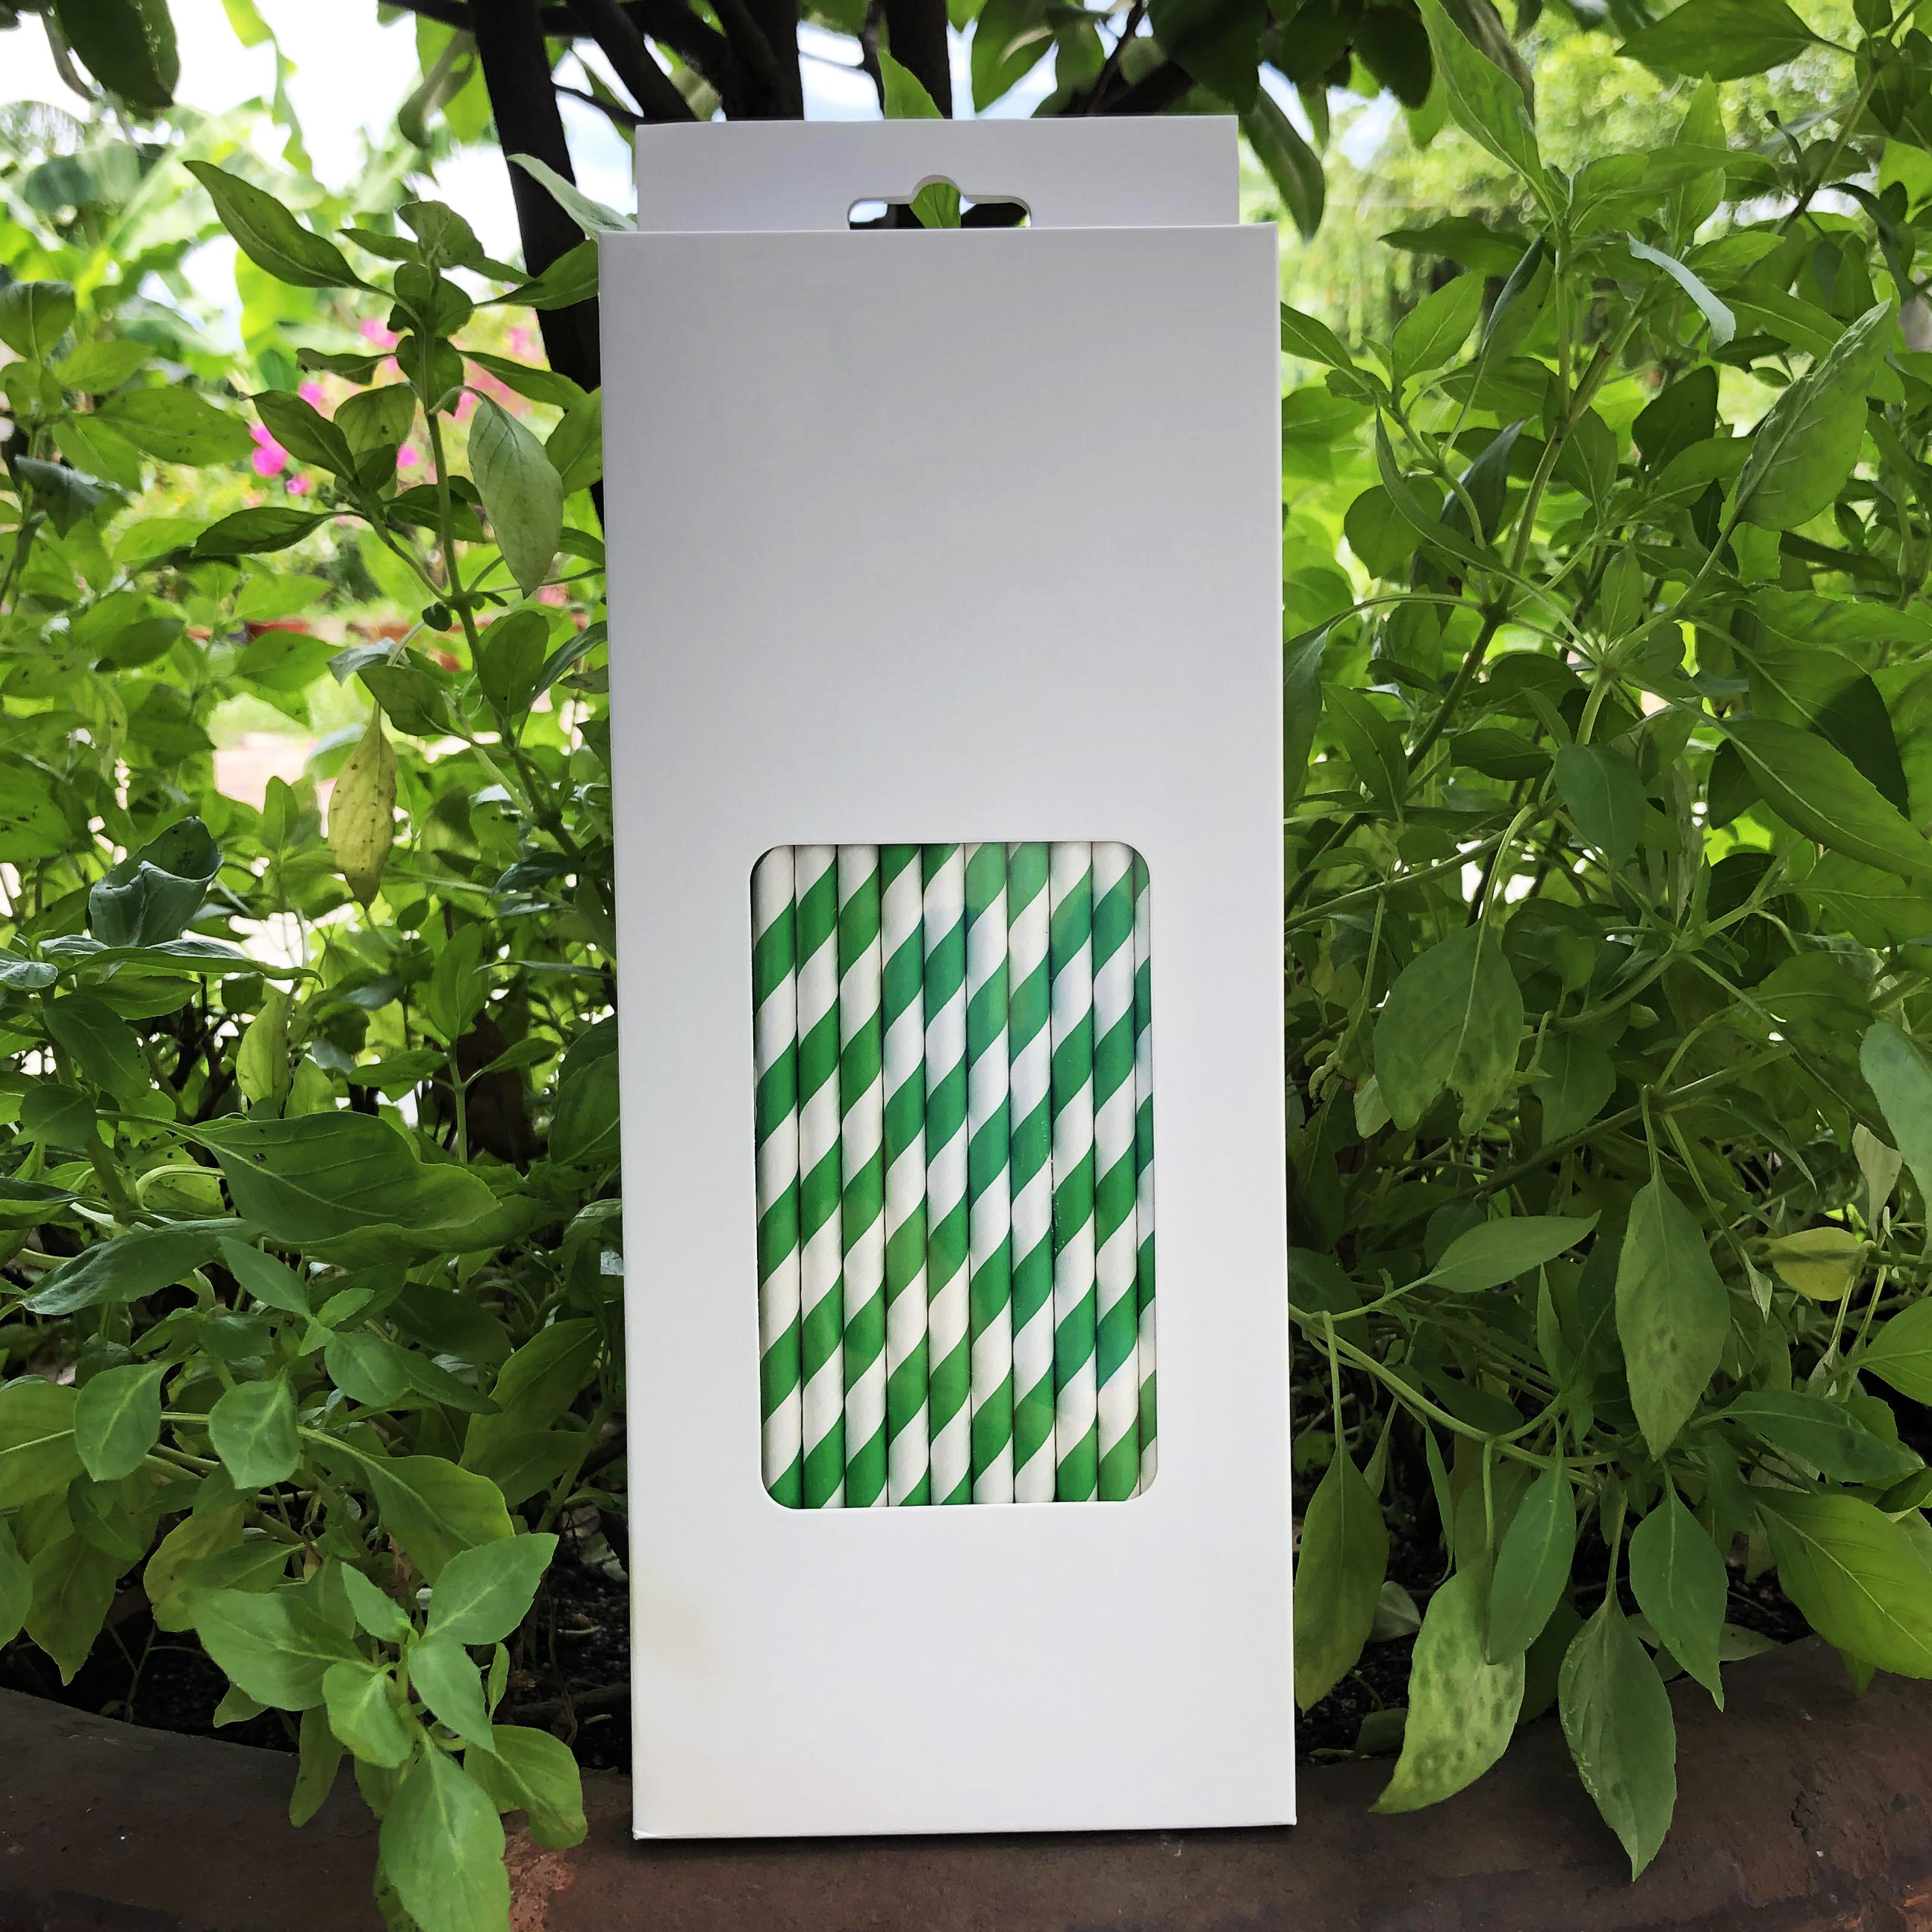 Hộp 100 ống hút giấy kích thước 197x6mm màu trắng xanh lá thân thiện môi trường dùng cho mọi loại nước